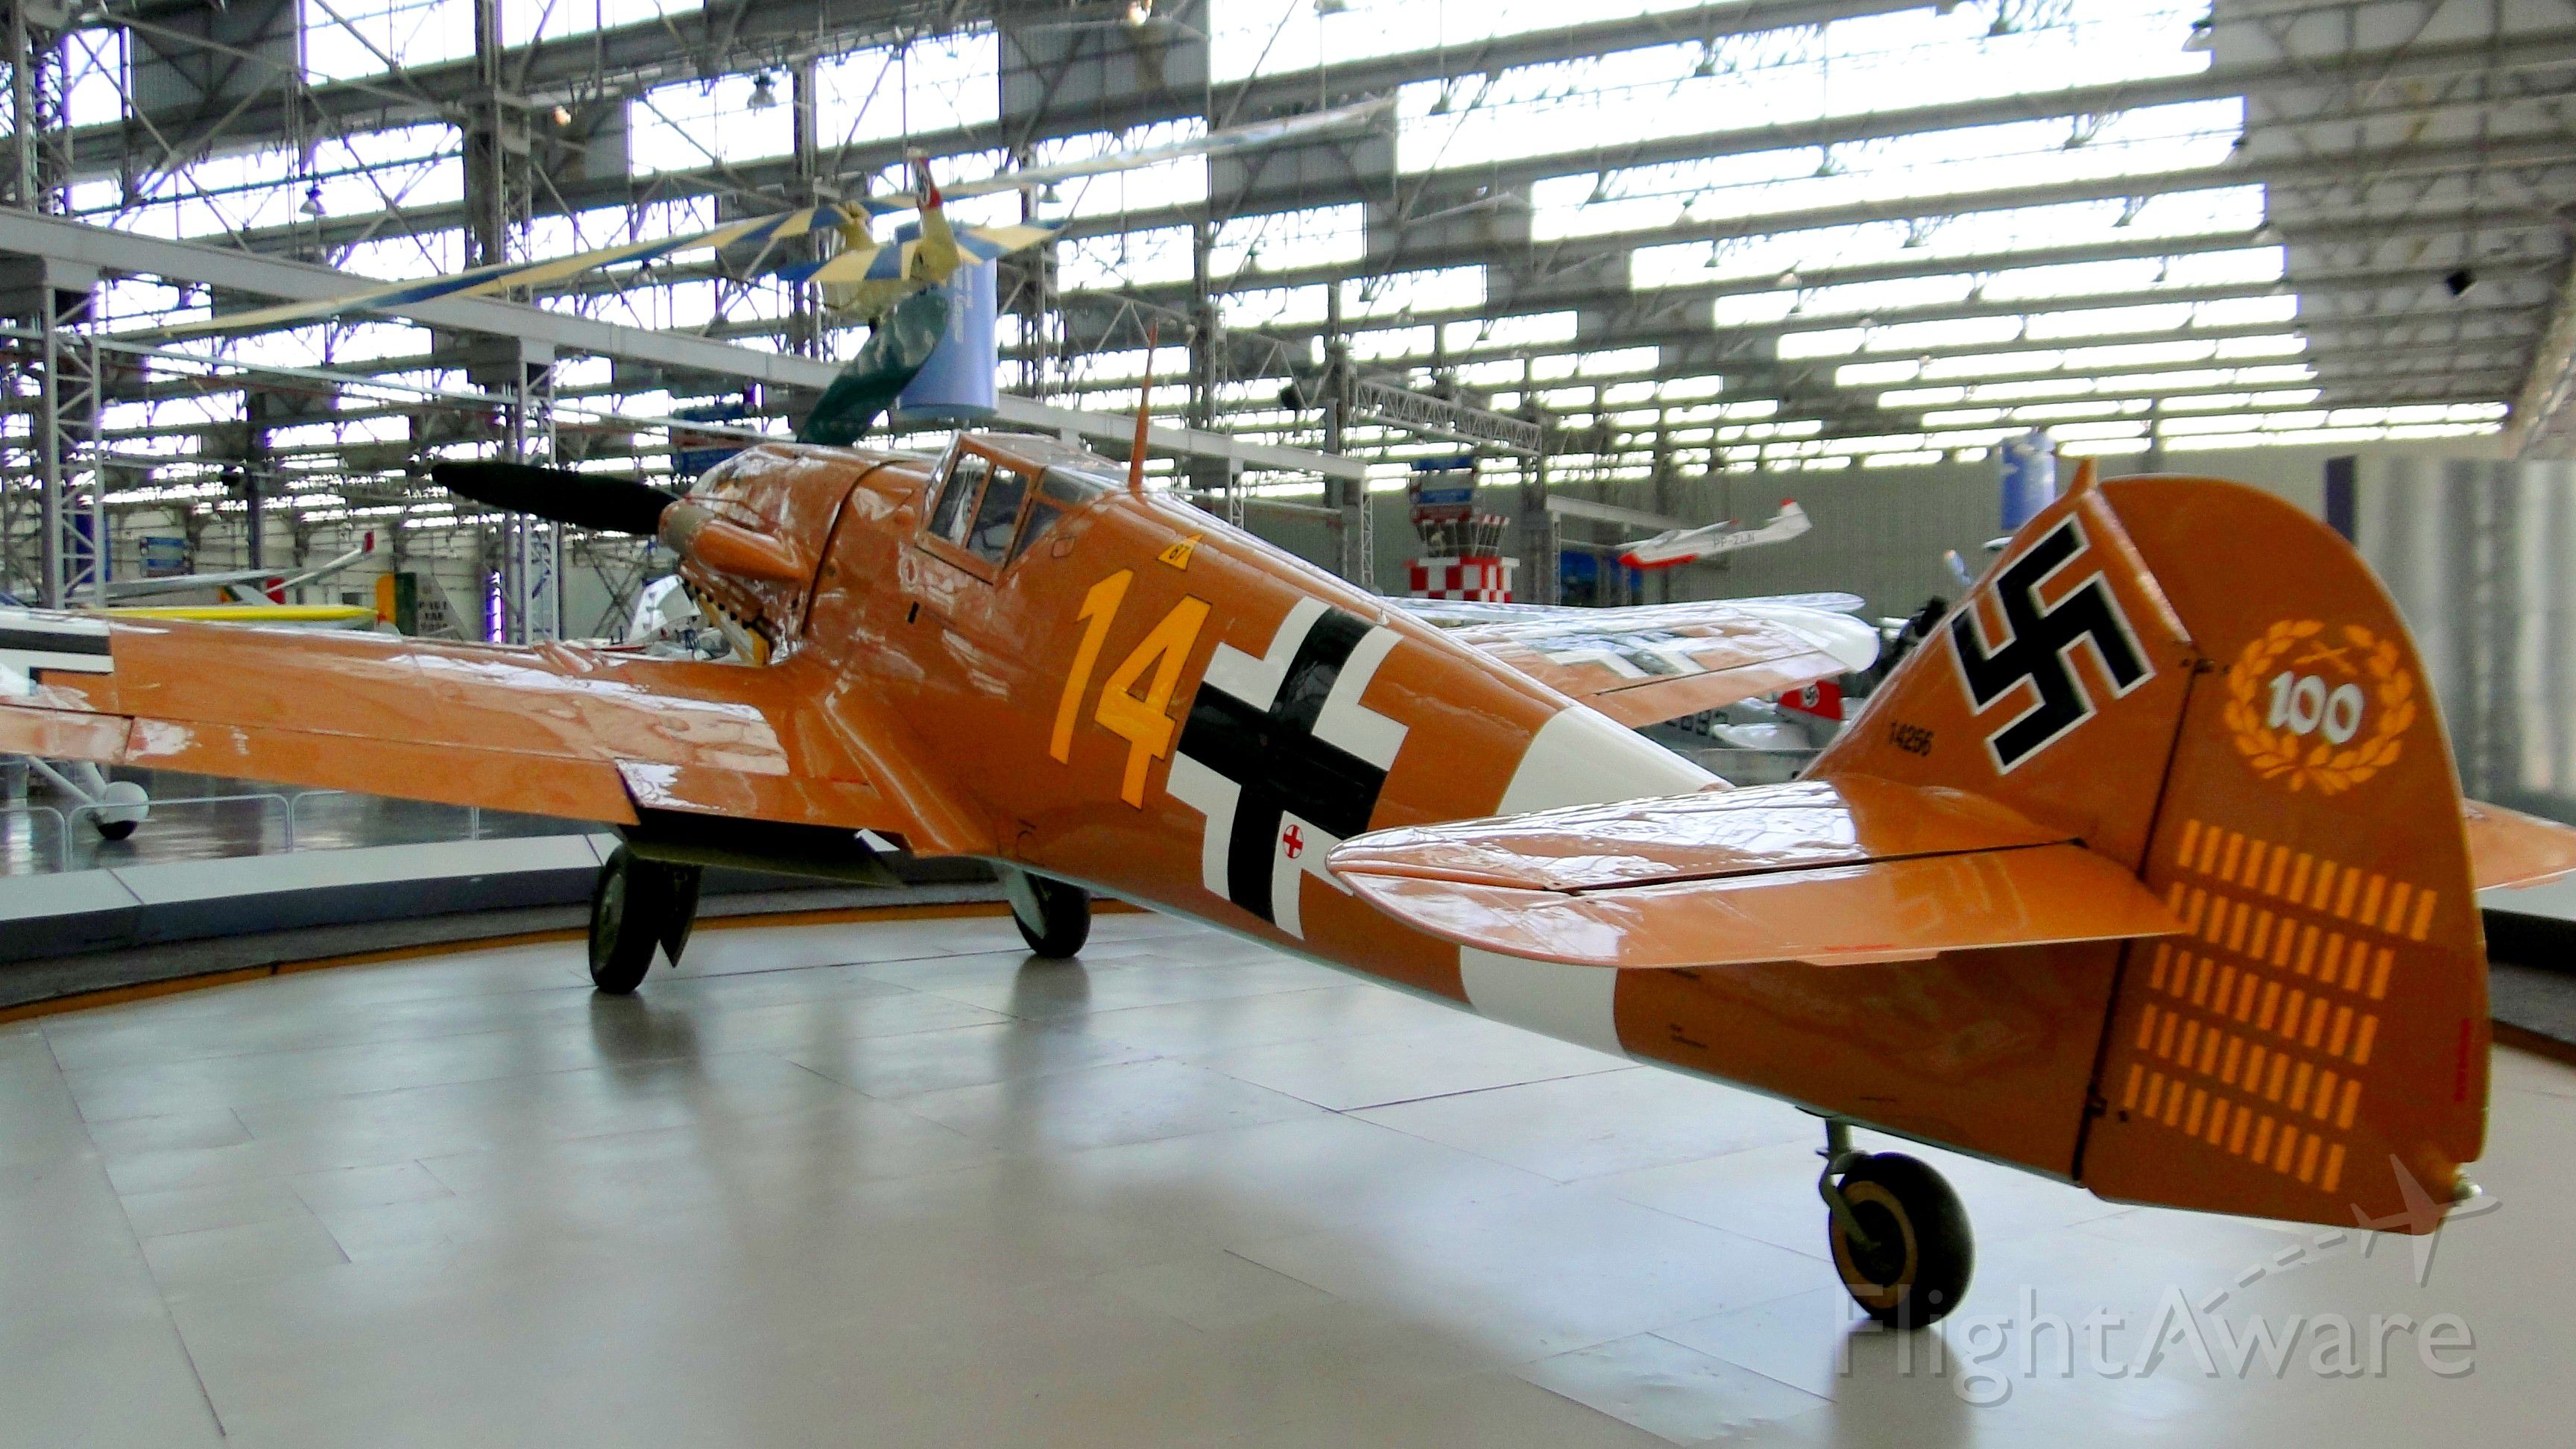 MESSERSCHMITT Bf-109 — - Messerschmitt Bf 109 in TAM Museum, São Carlos-SP, BRAZIL